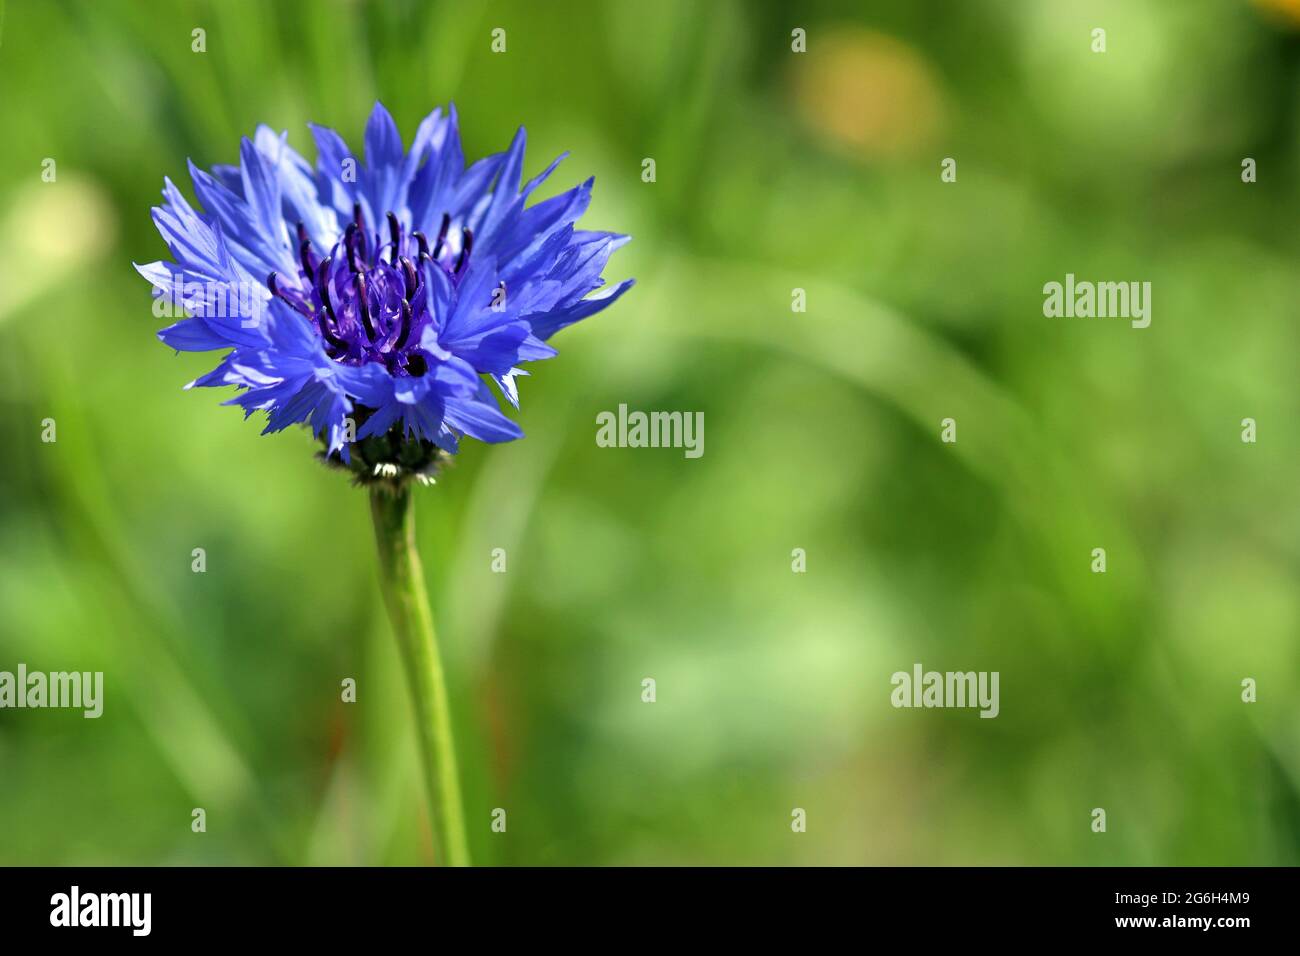 Le Cornflower bleu Centaurea Cyanus, autrefois considéré comme une mauvaise herbe des champs de céréales, maintenant une fleur sauvage très aimée. Photographié dans un pré anglais en juin Banque D'Images